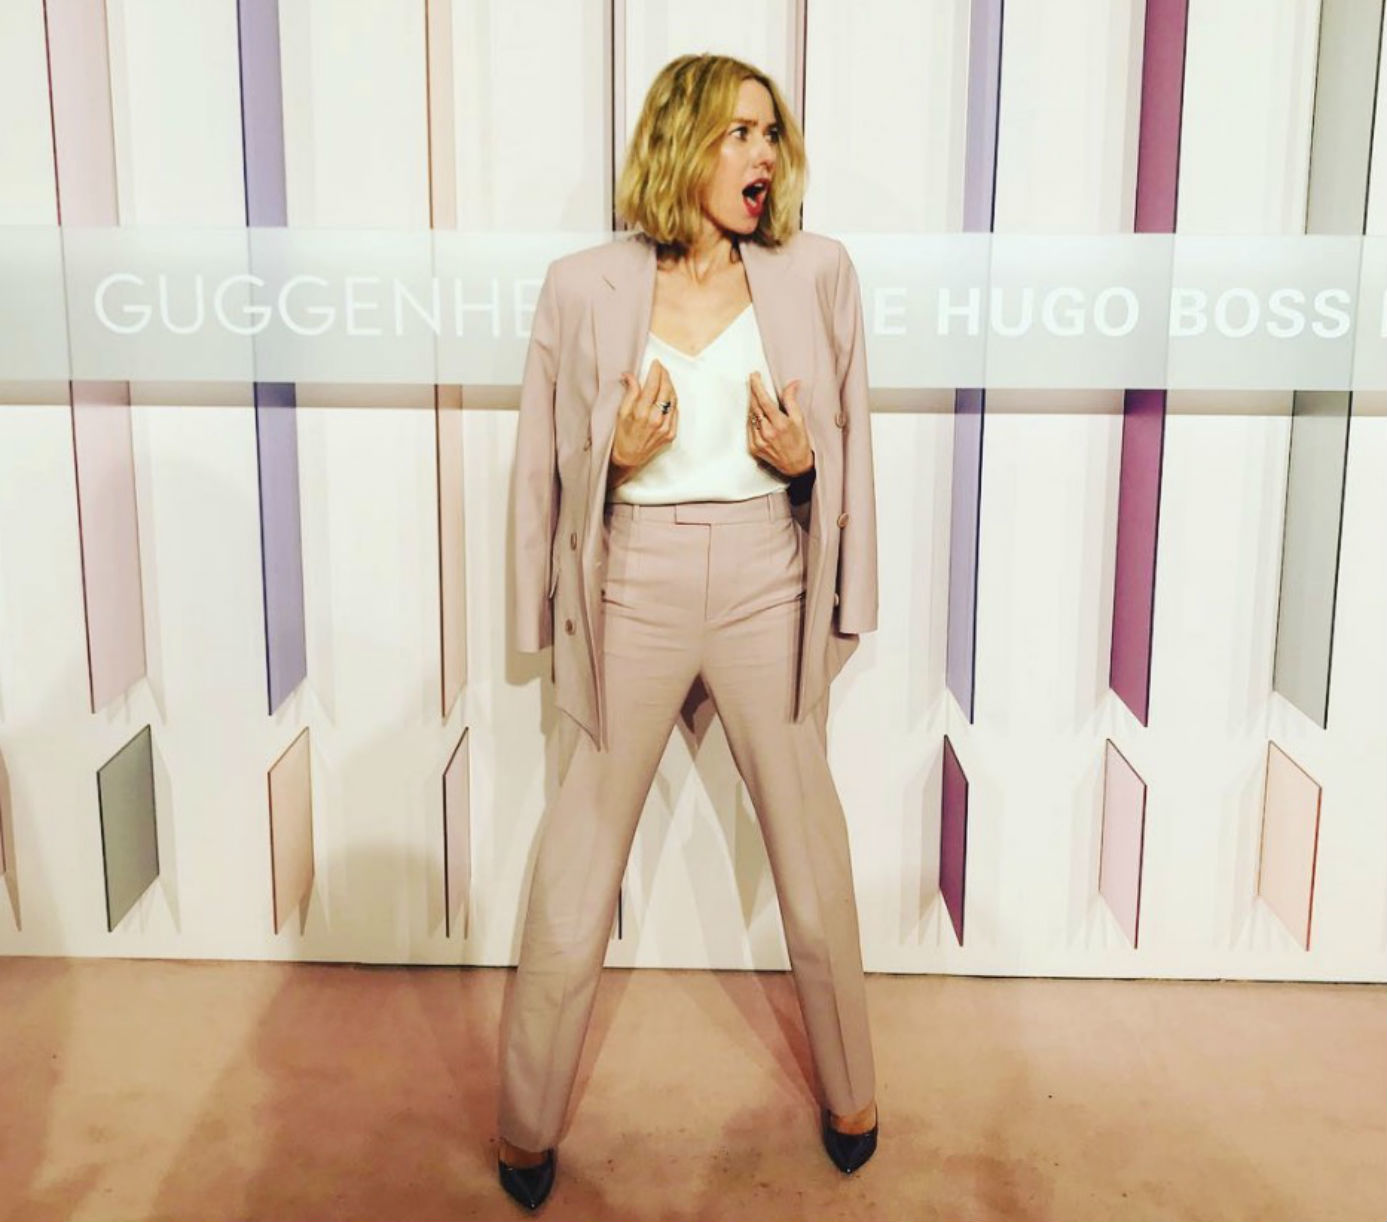 La actriz Naomi Watts durante los Premios Hugo Boss 2018 en el Museo...